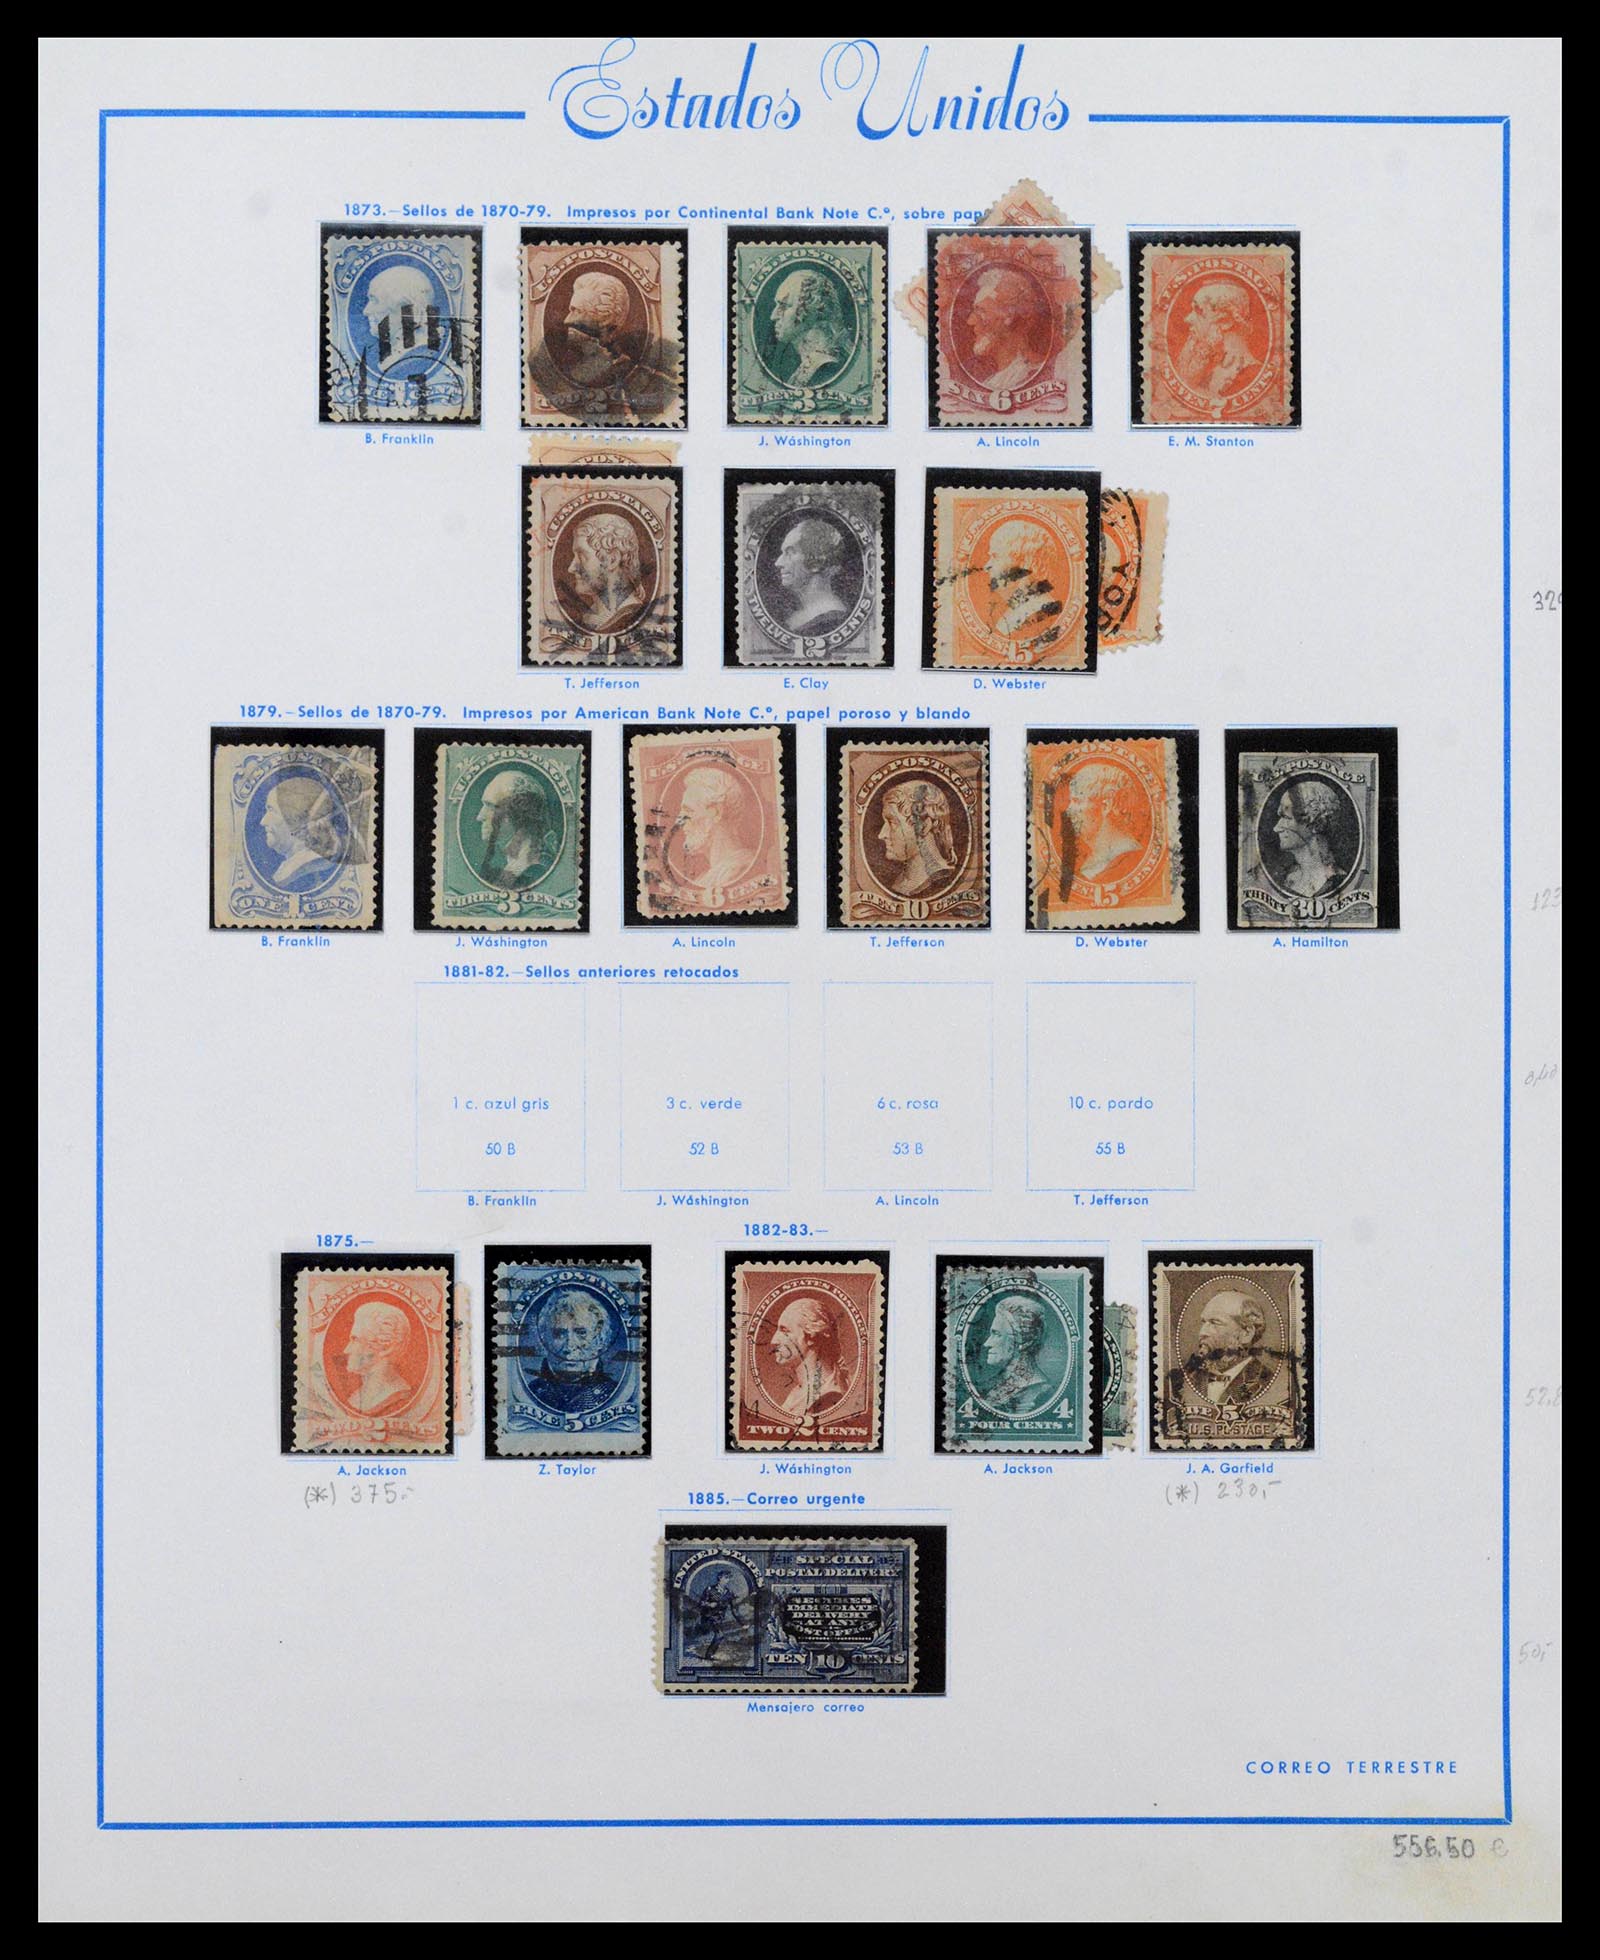 39190 0004 - Stamp collection 39190 USA 1851-1975.